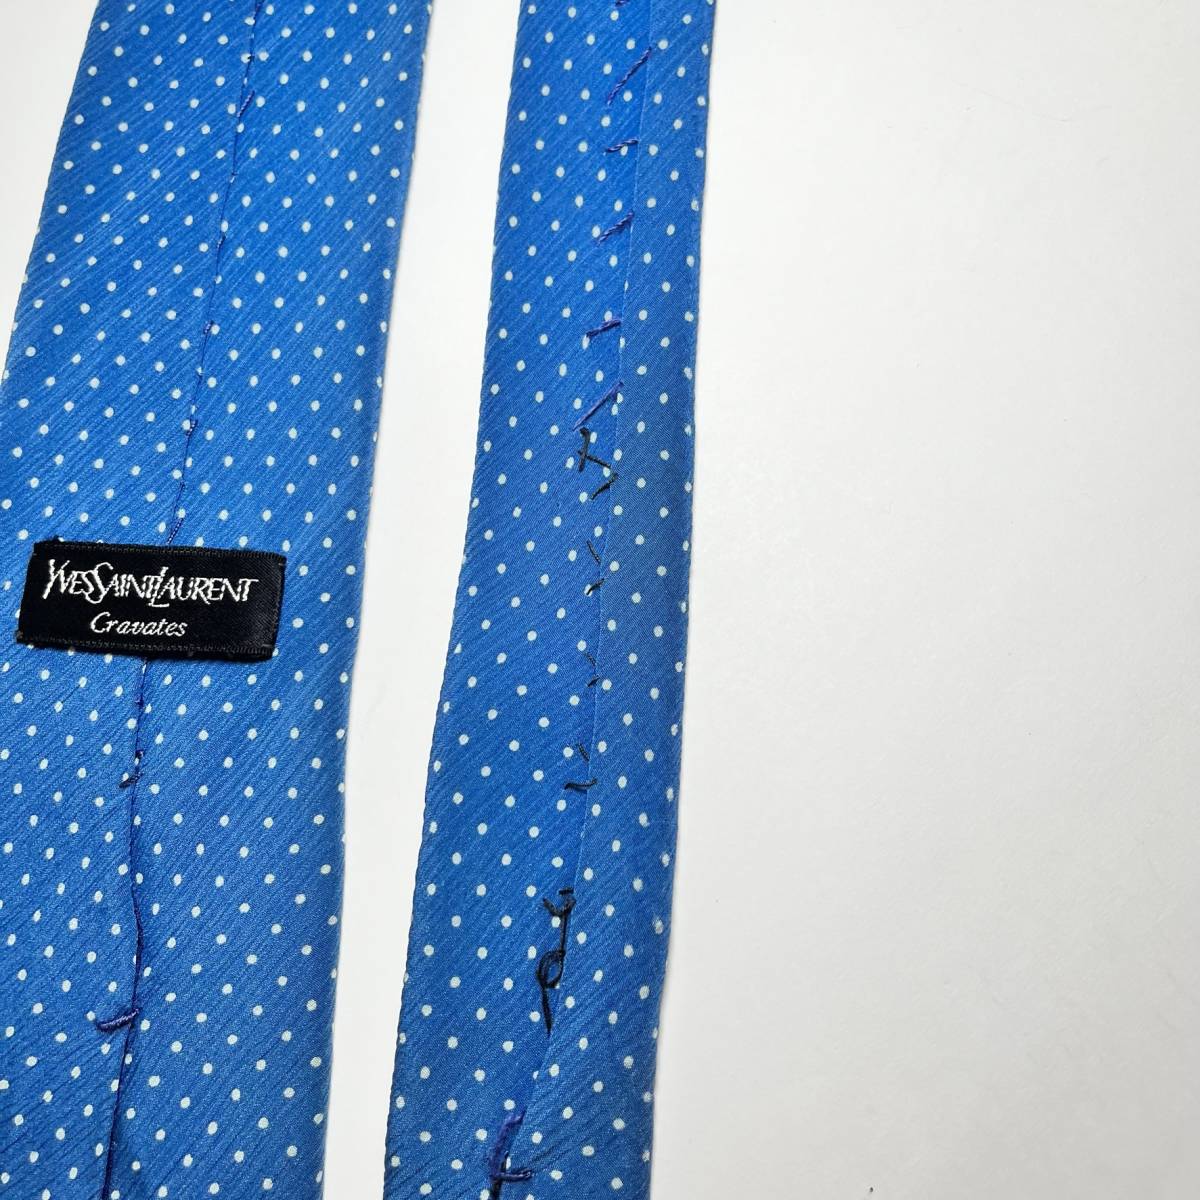  Eve солнечный rolan YVES SAINT LAURENT YSL галстук шелк голубой точка освежение высокий бренд постоянный синий шелк 